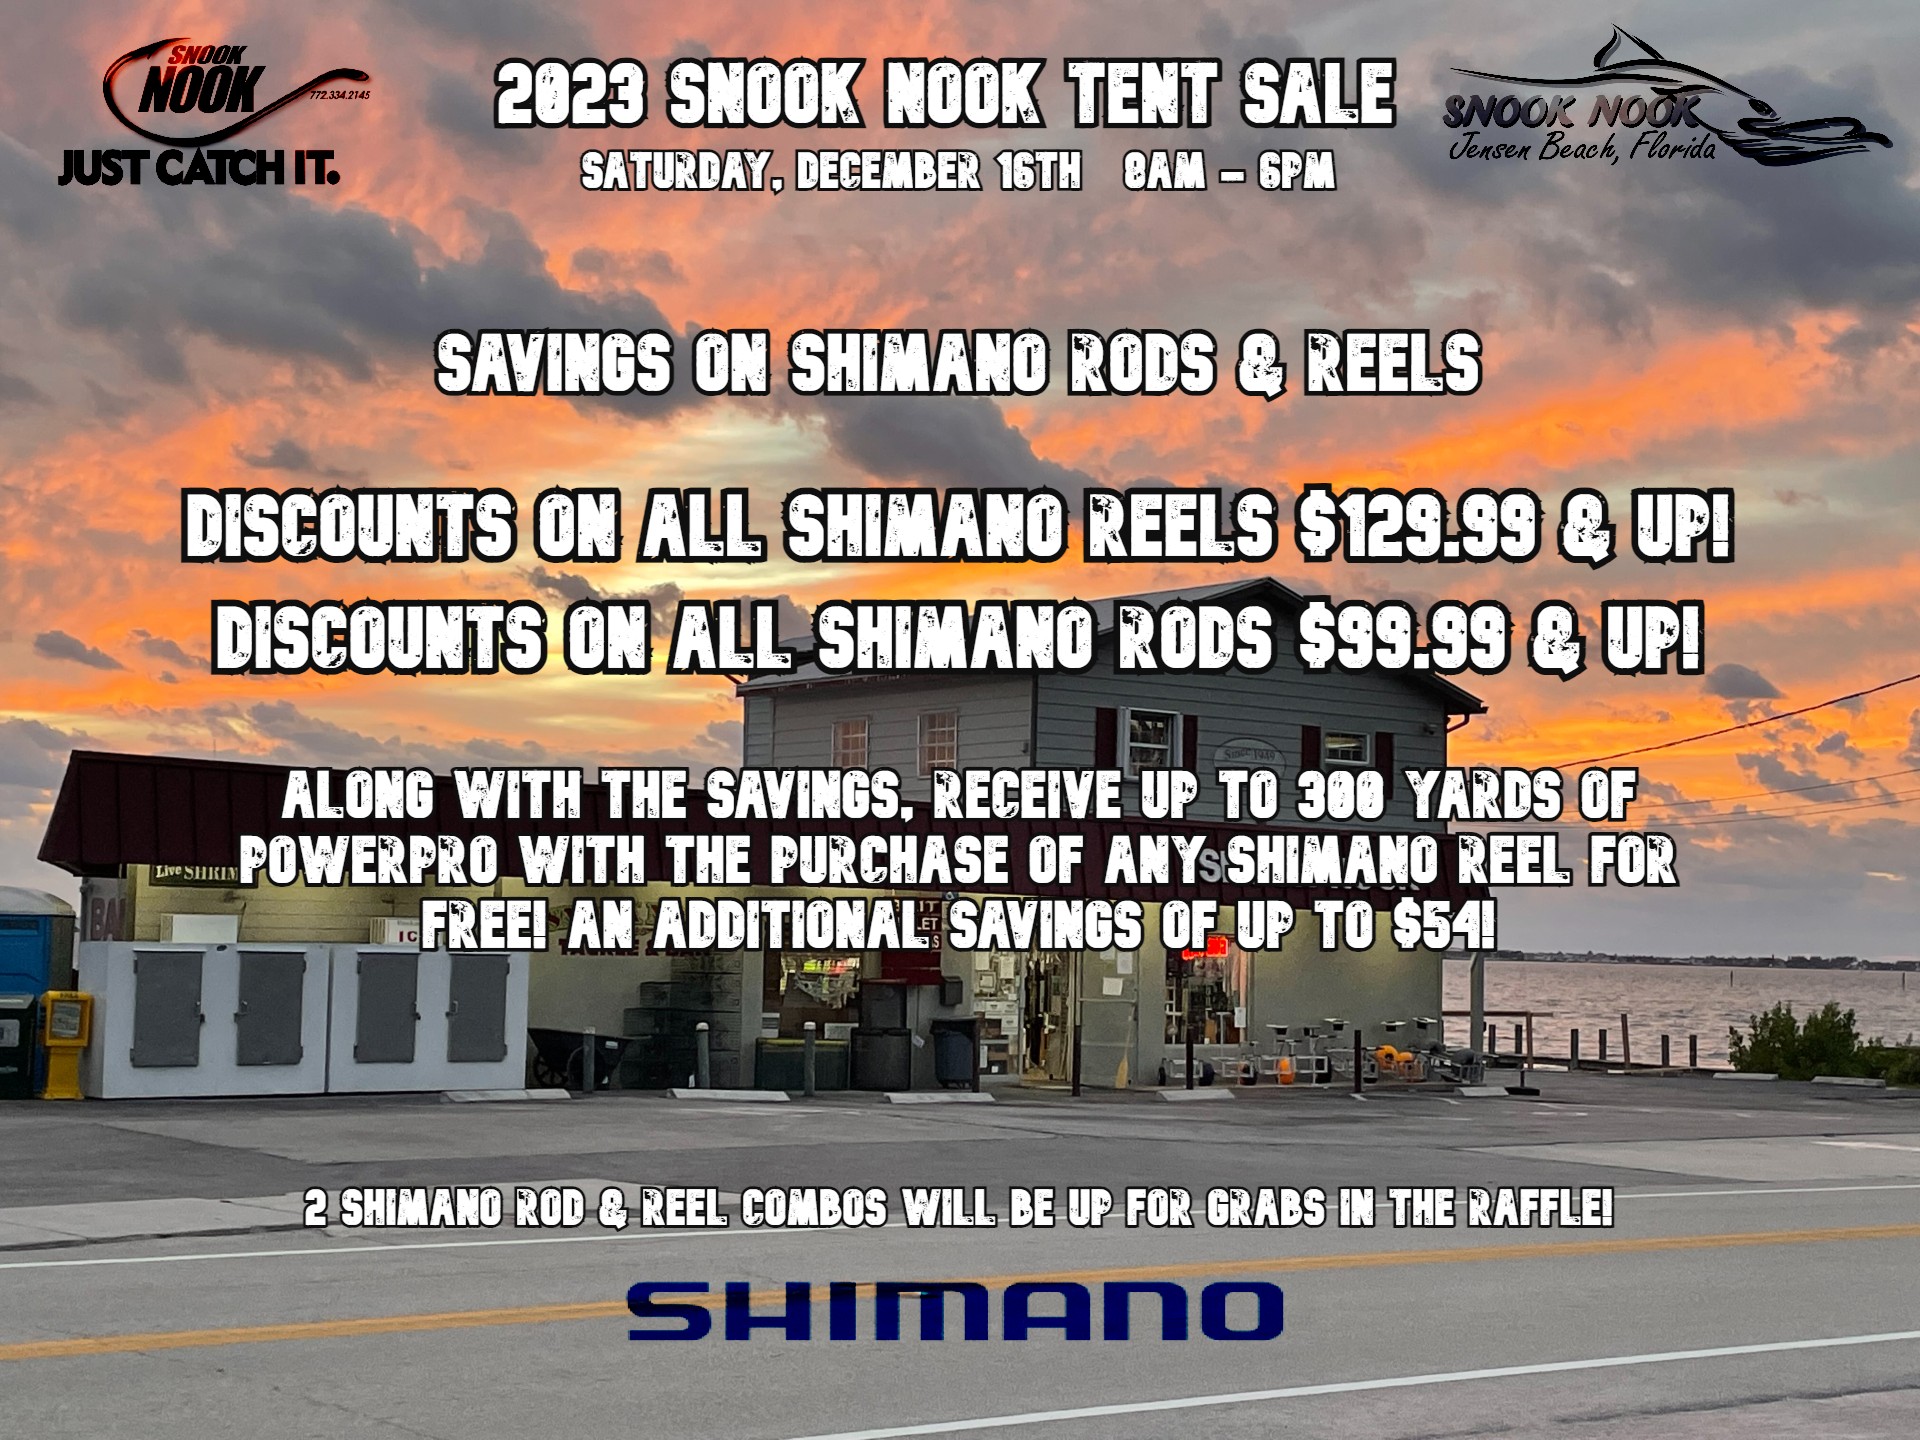 2023 Snook Nook Tent Sale – Shimano Rods & Reels